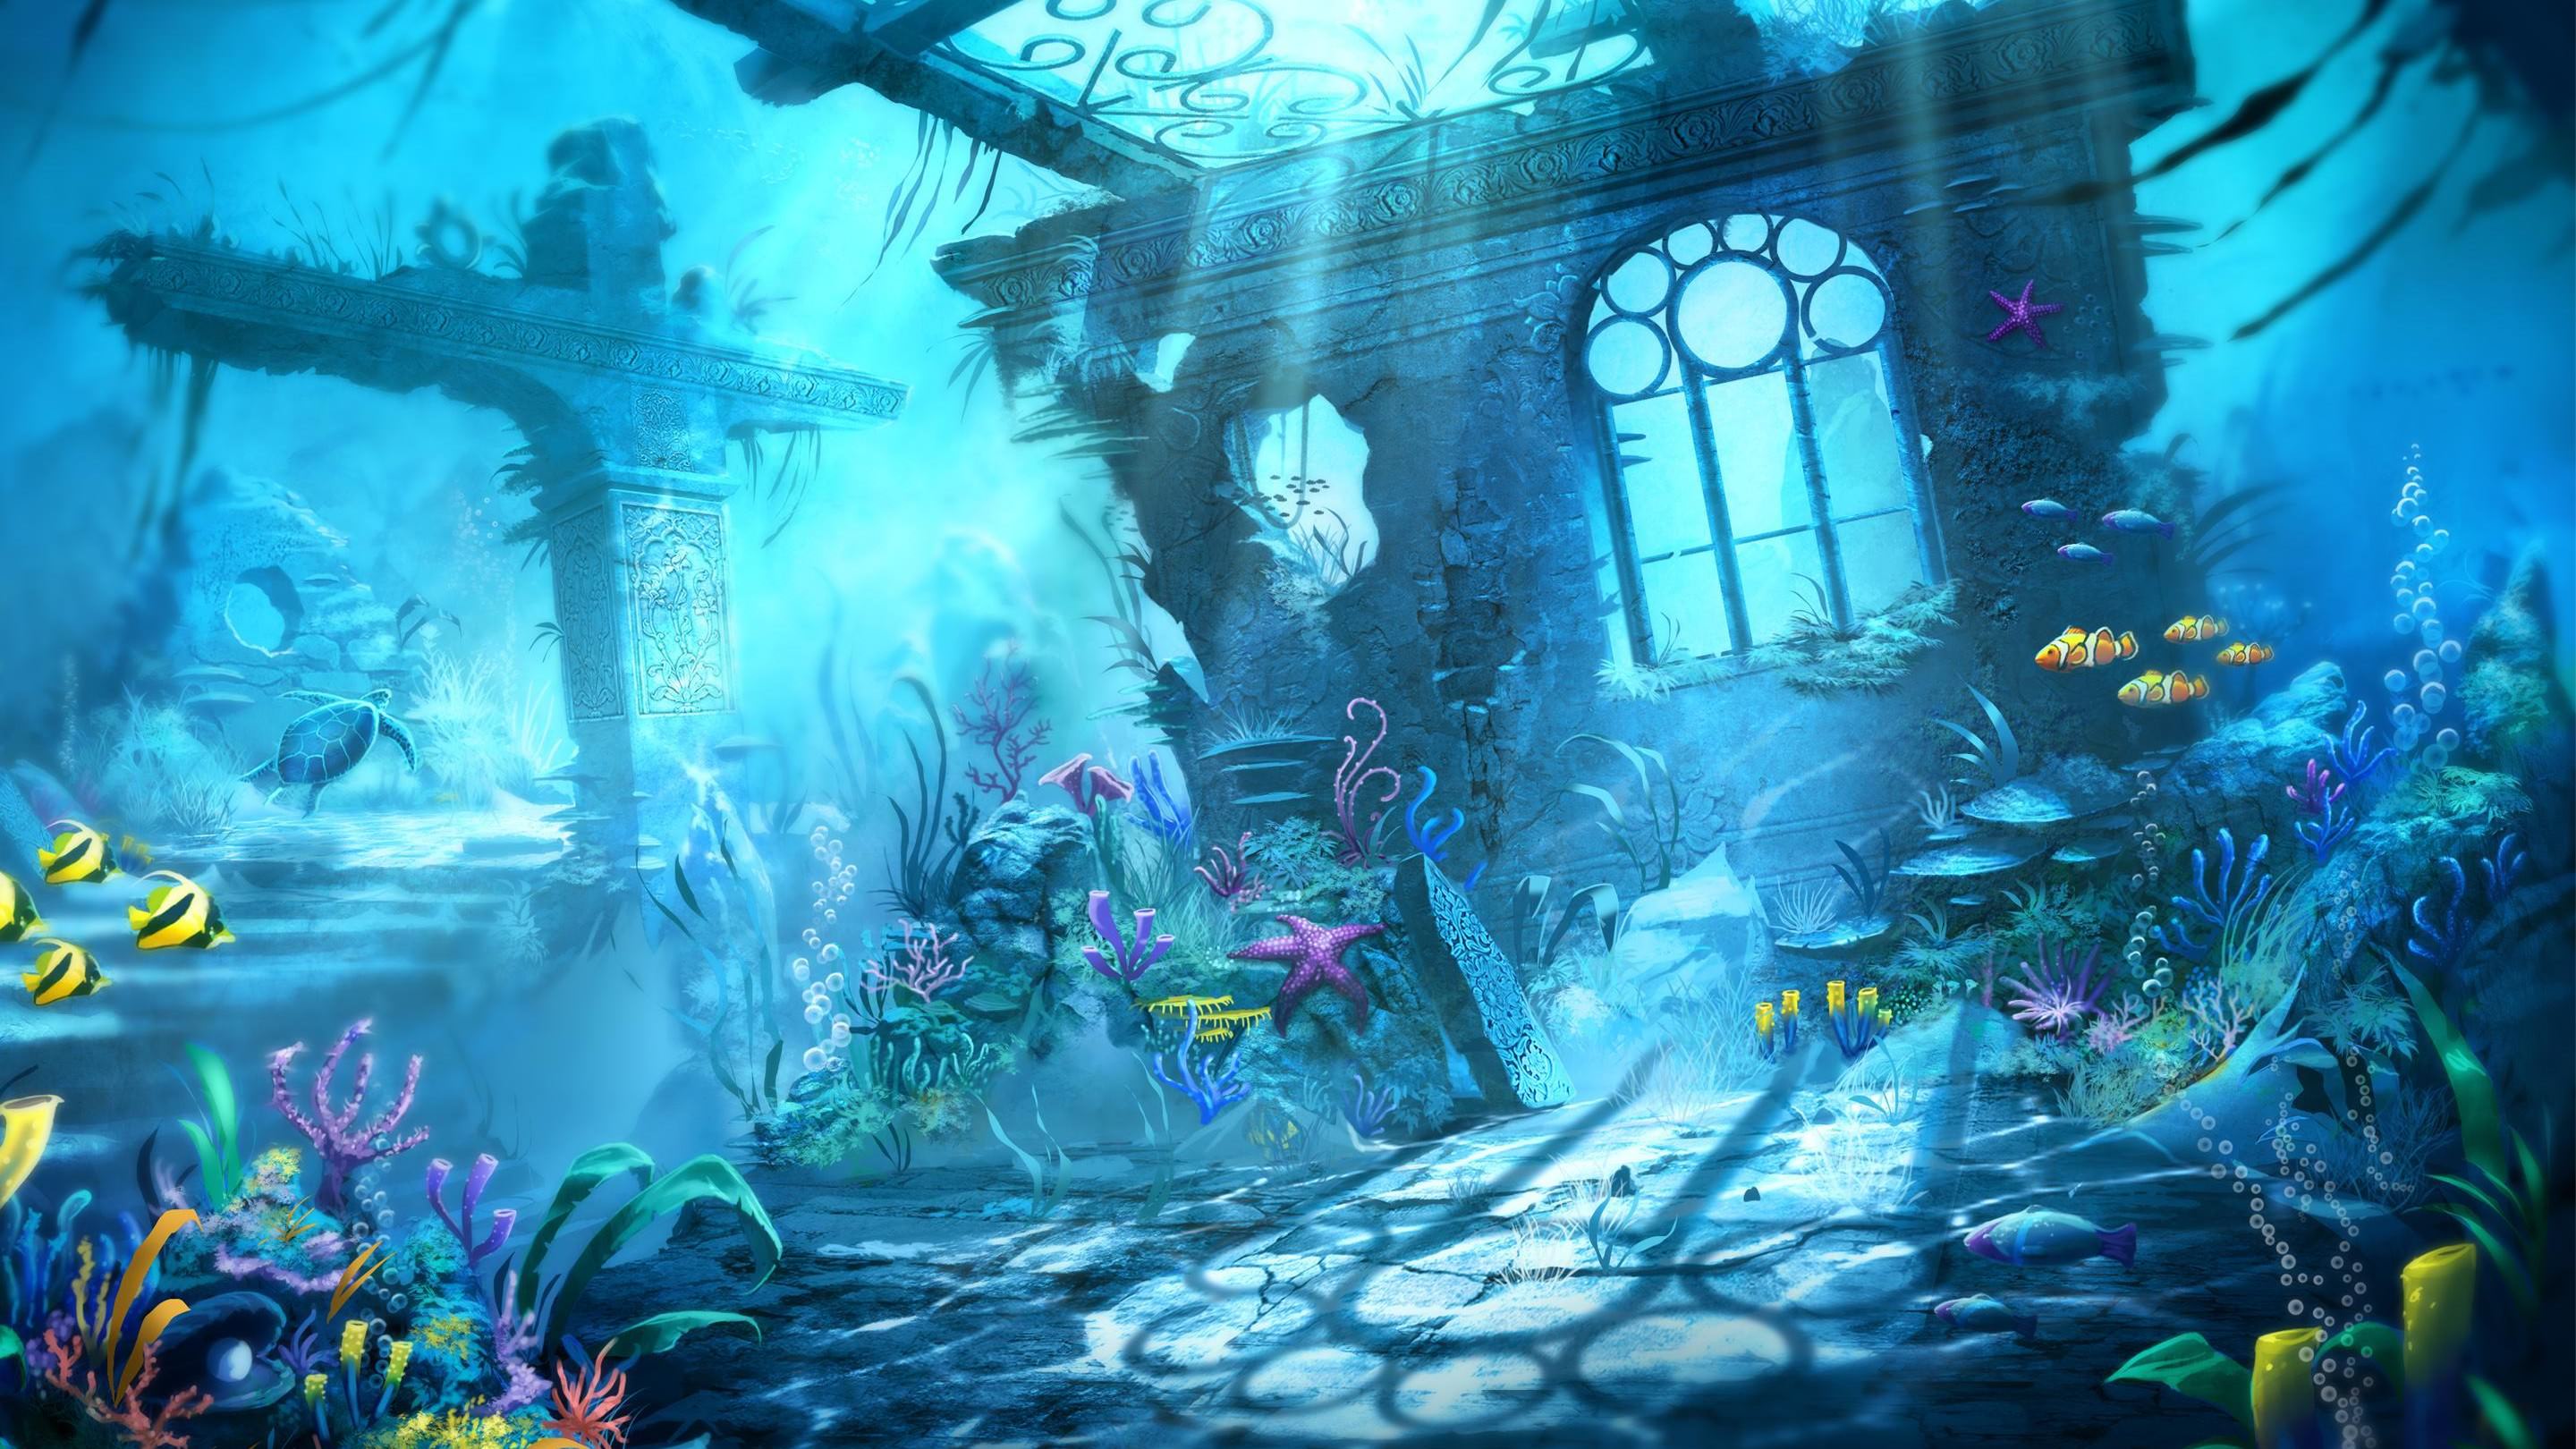 Aquarium Background Wallpaper Image Pictures